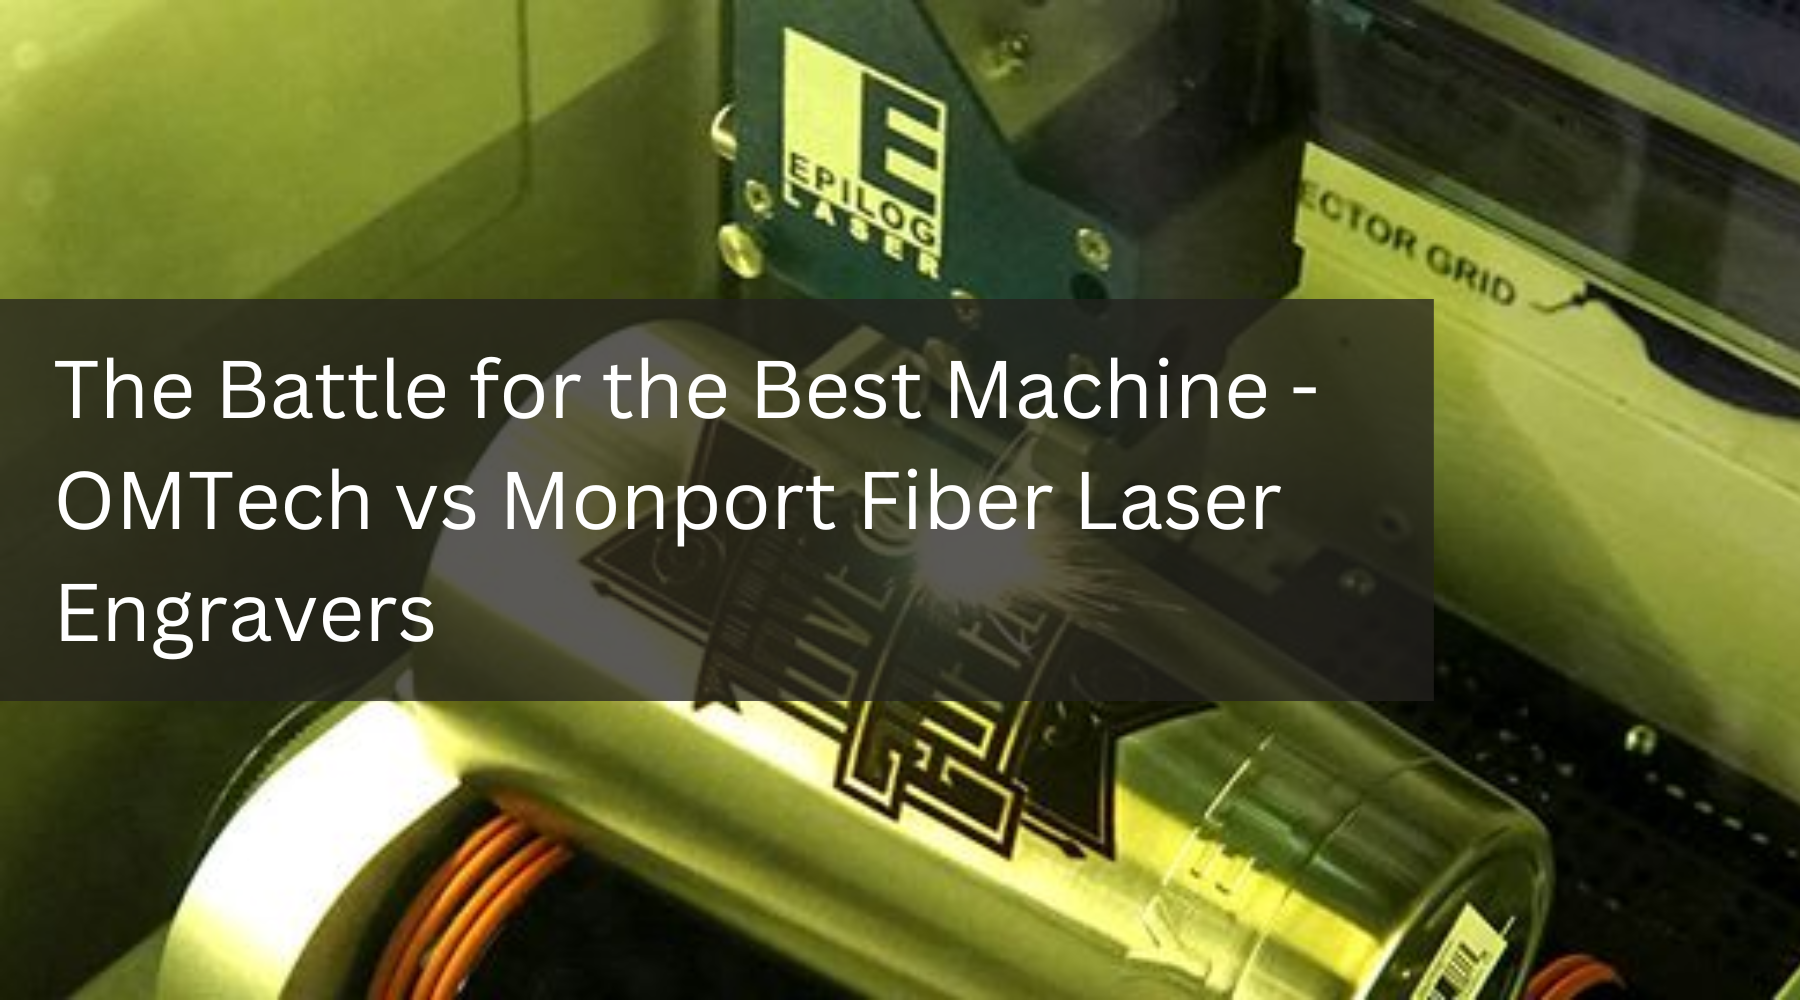 The Battle for the Best Machine - OMTech vs Monport Fiber Laser Engravers